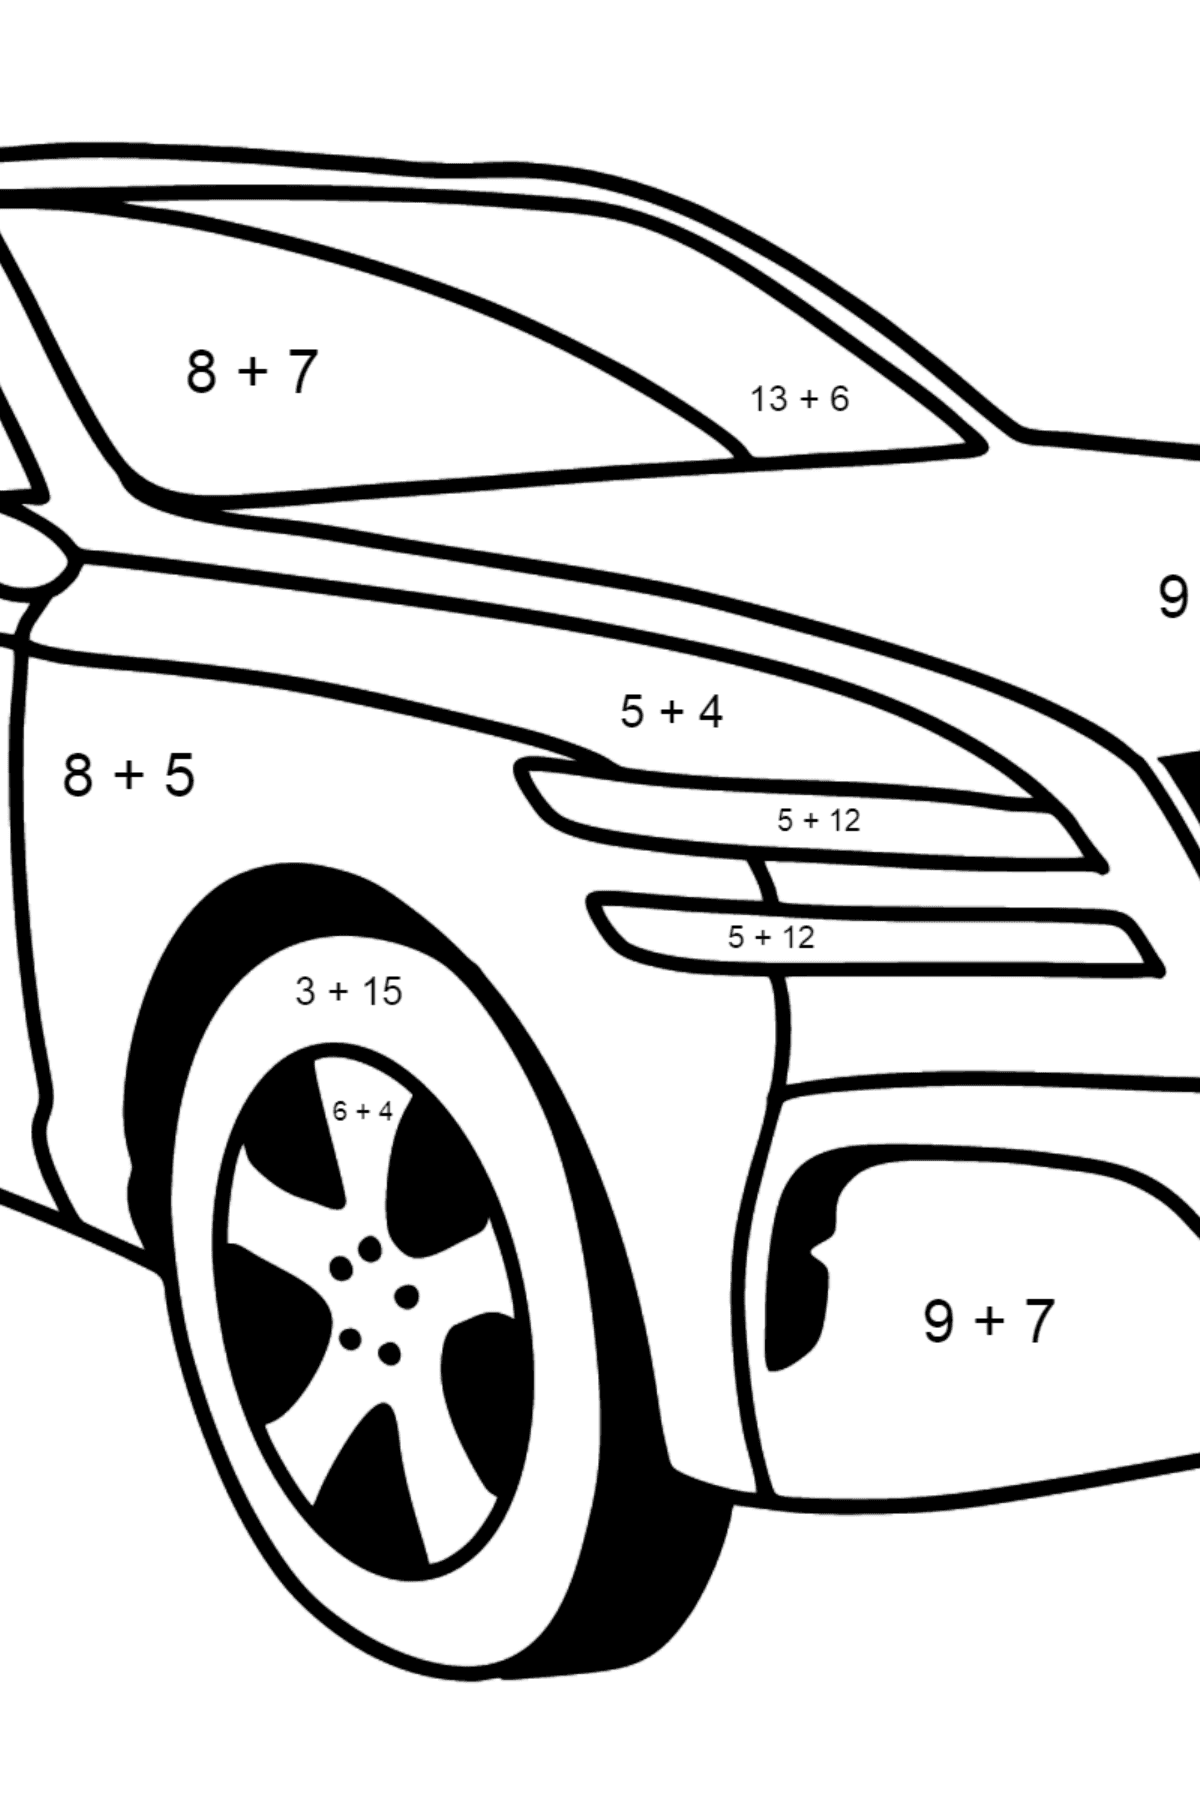 Genesis Auto Ausmalbild - Mathe Ausmalbilder - Addition für Kinder